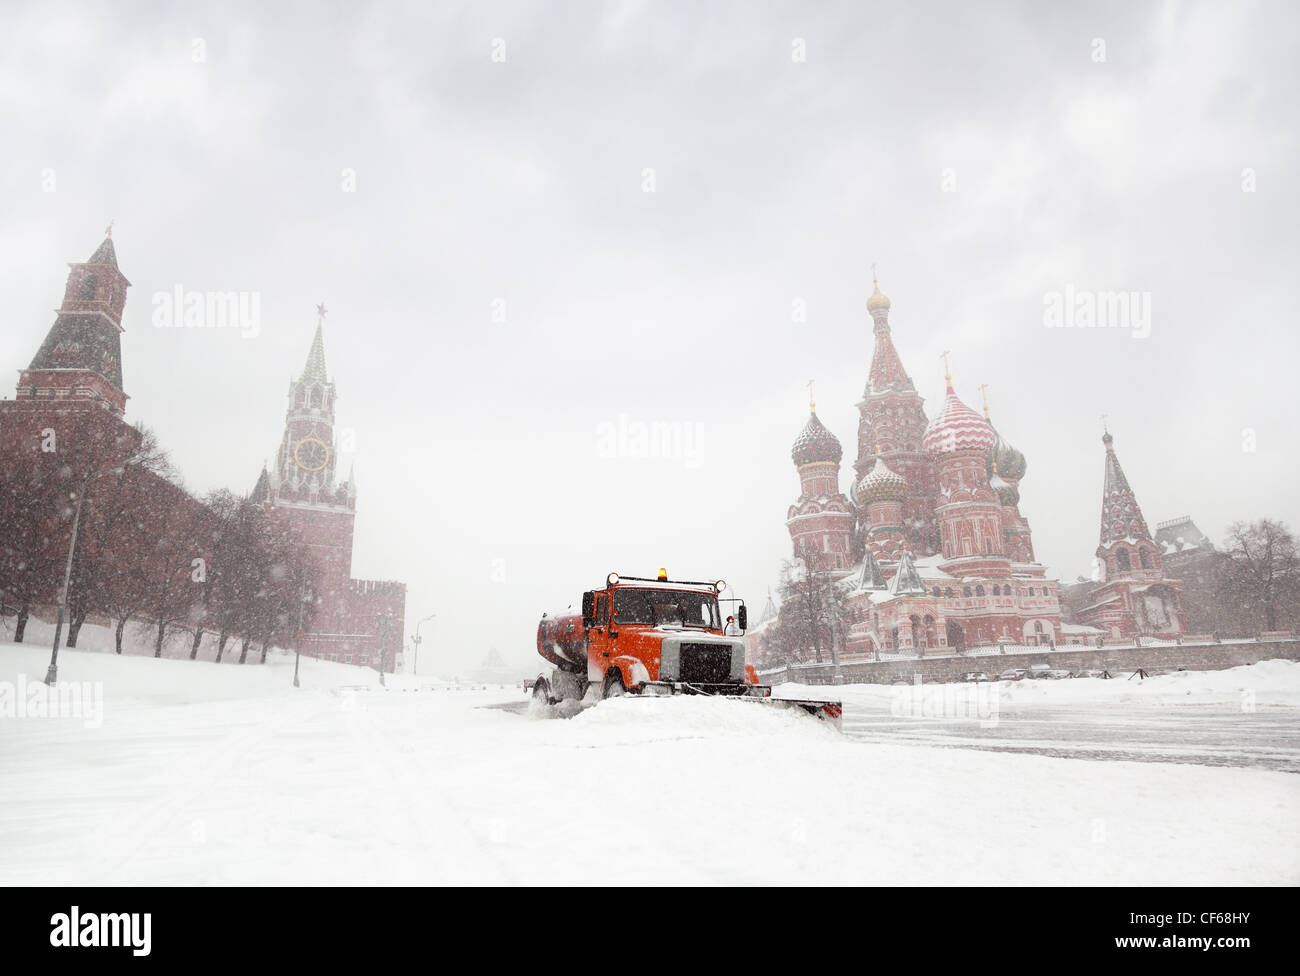 Schnee-Entferner Truck saubere Straße in der Nähe von rotes Quadrat St  Basil Tempel Spasskaya Tower Kreml Moskau Russland im Winter Schneefall  Stockfotografie - Alamy